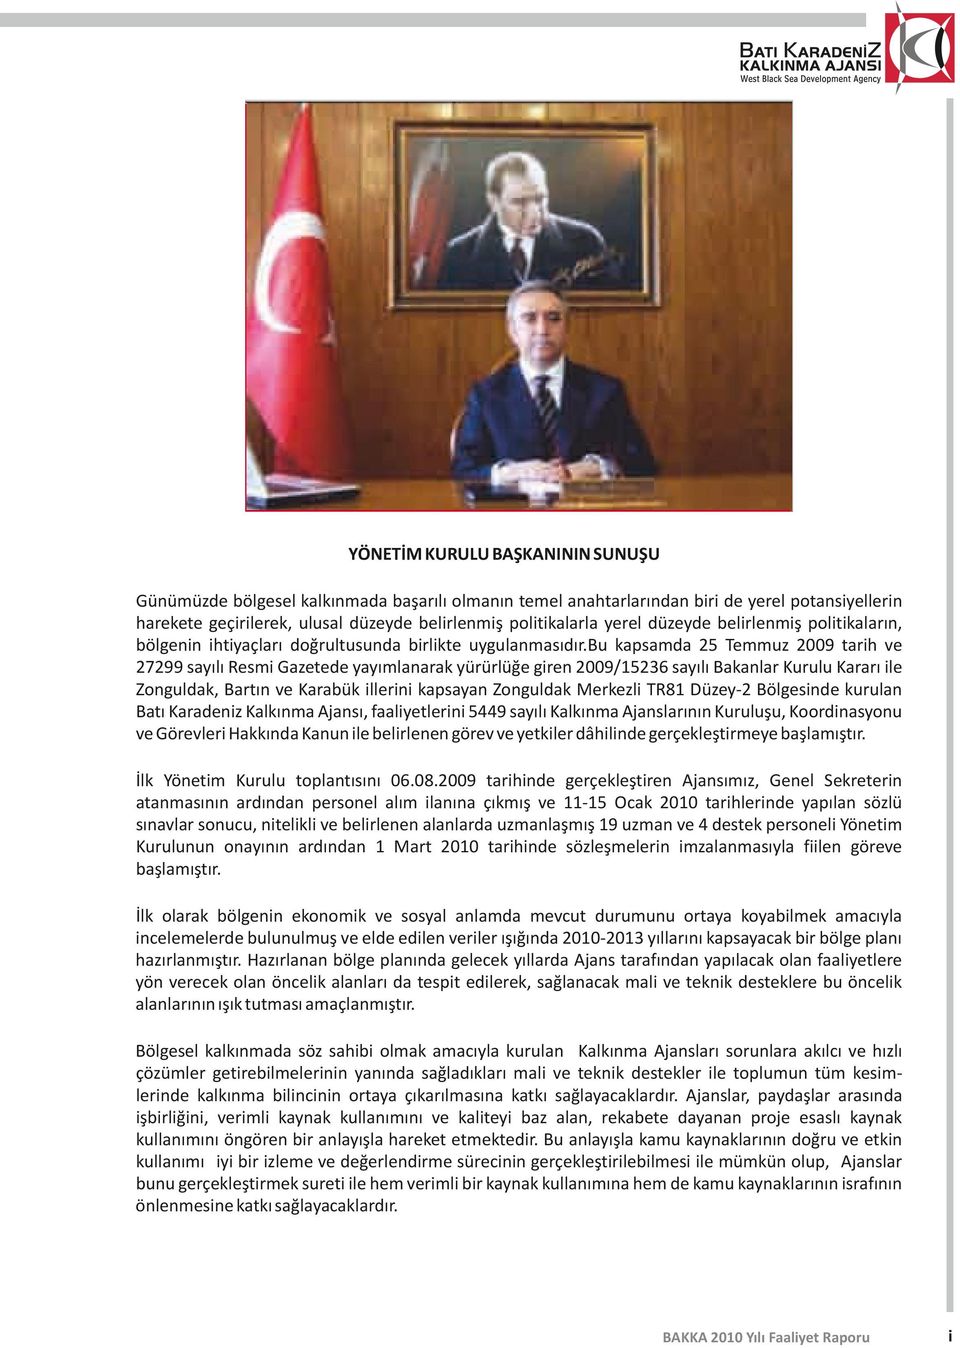 bu kapsamda 25 Temmuz 2009 tarih ve 27299 sayılı Resmi Gazetede yayımlanarak yürürlüğe giren 2009/5236 sayılı Bakanlar Kurulu Kararı ile Zonguldak, Bartın ve Karabük illerini kapsayan Zonguldak